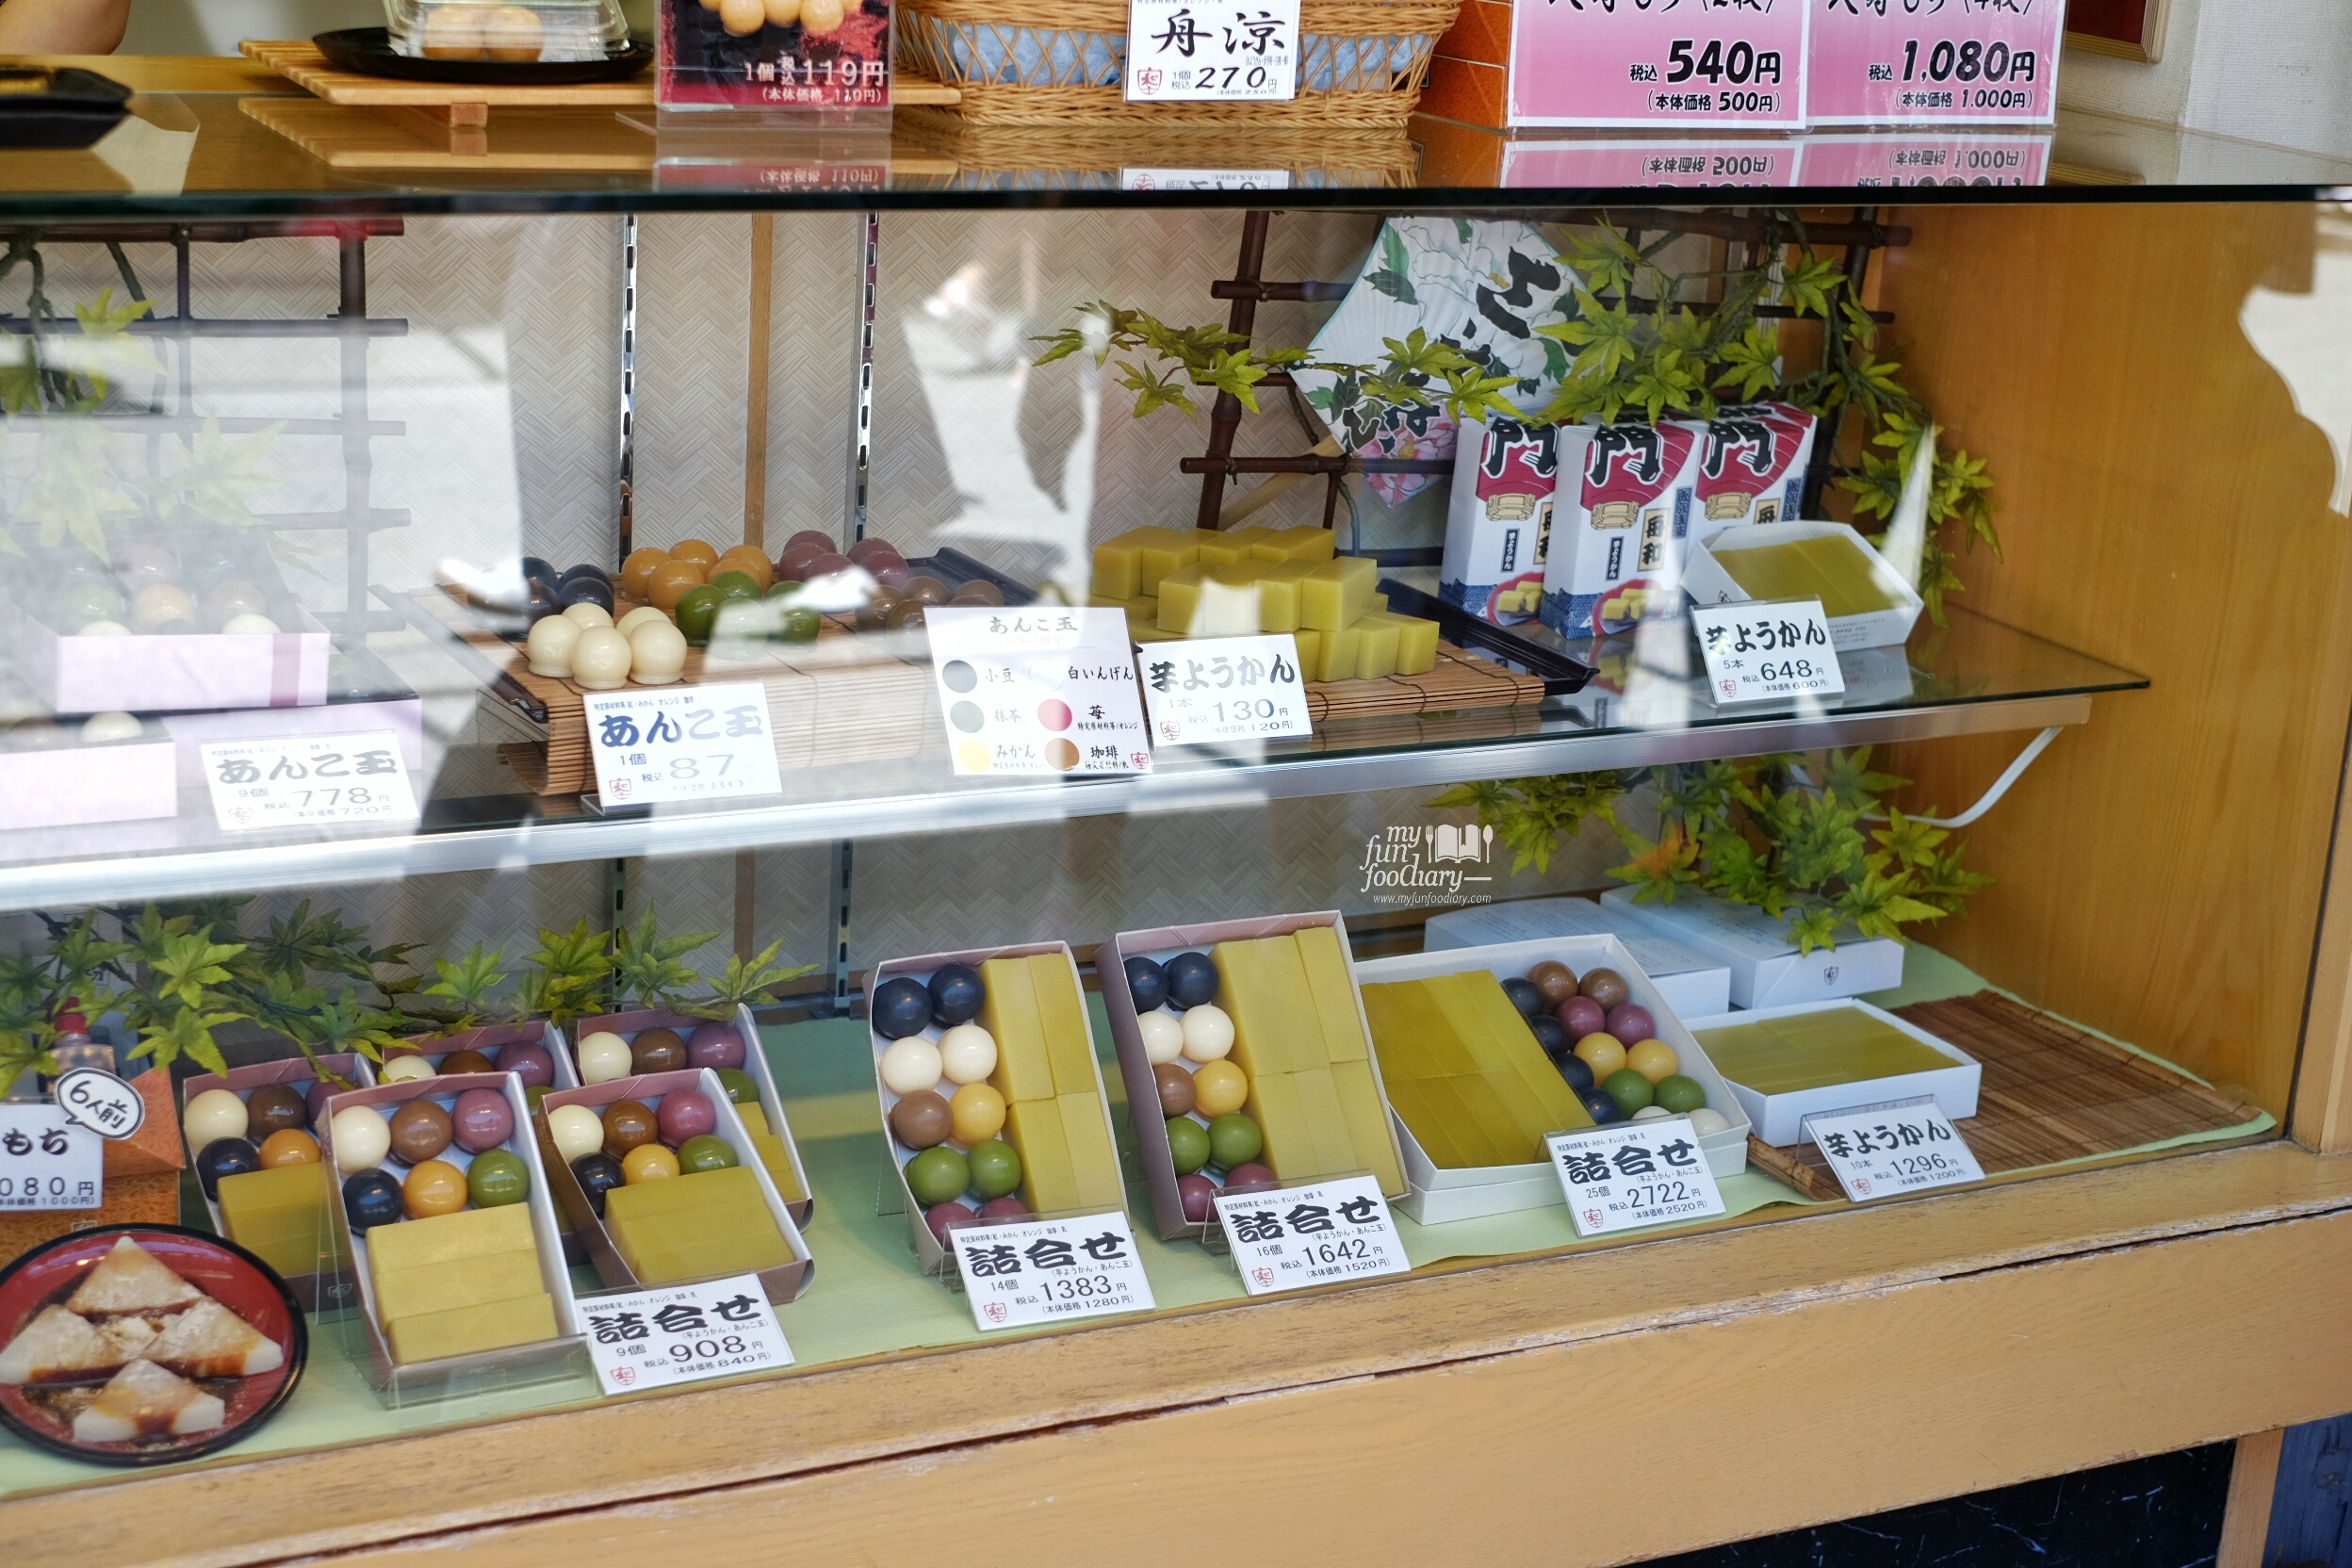 Mochi Shops at Asakusa Tokyo by Myfunfoodiary